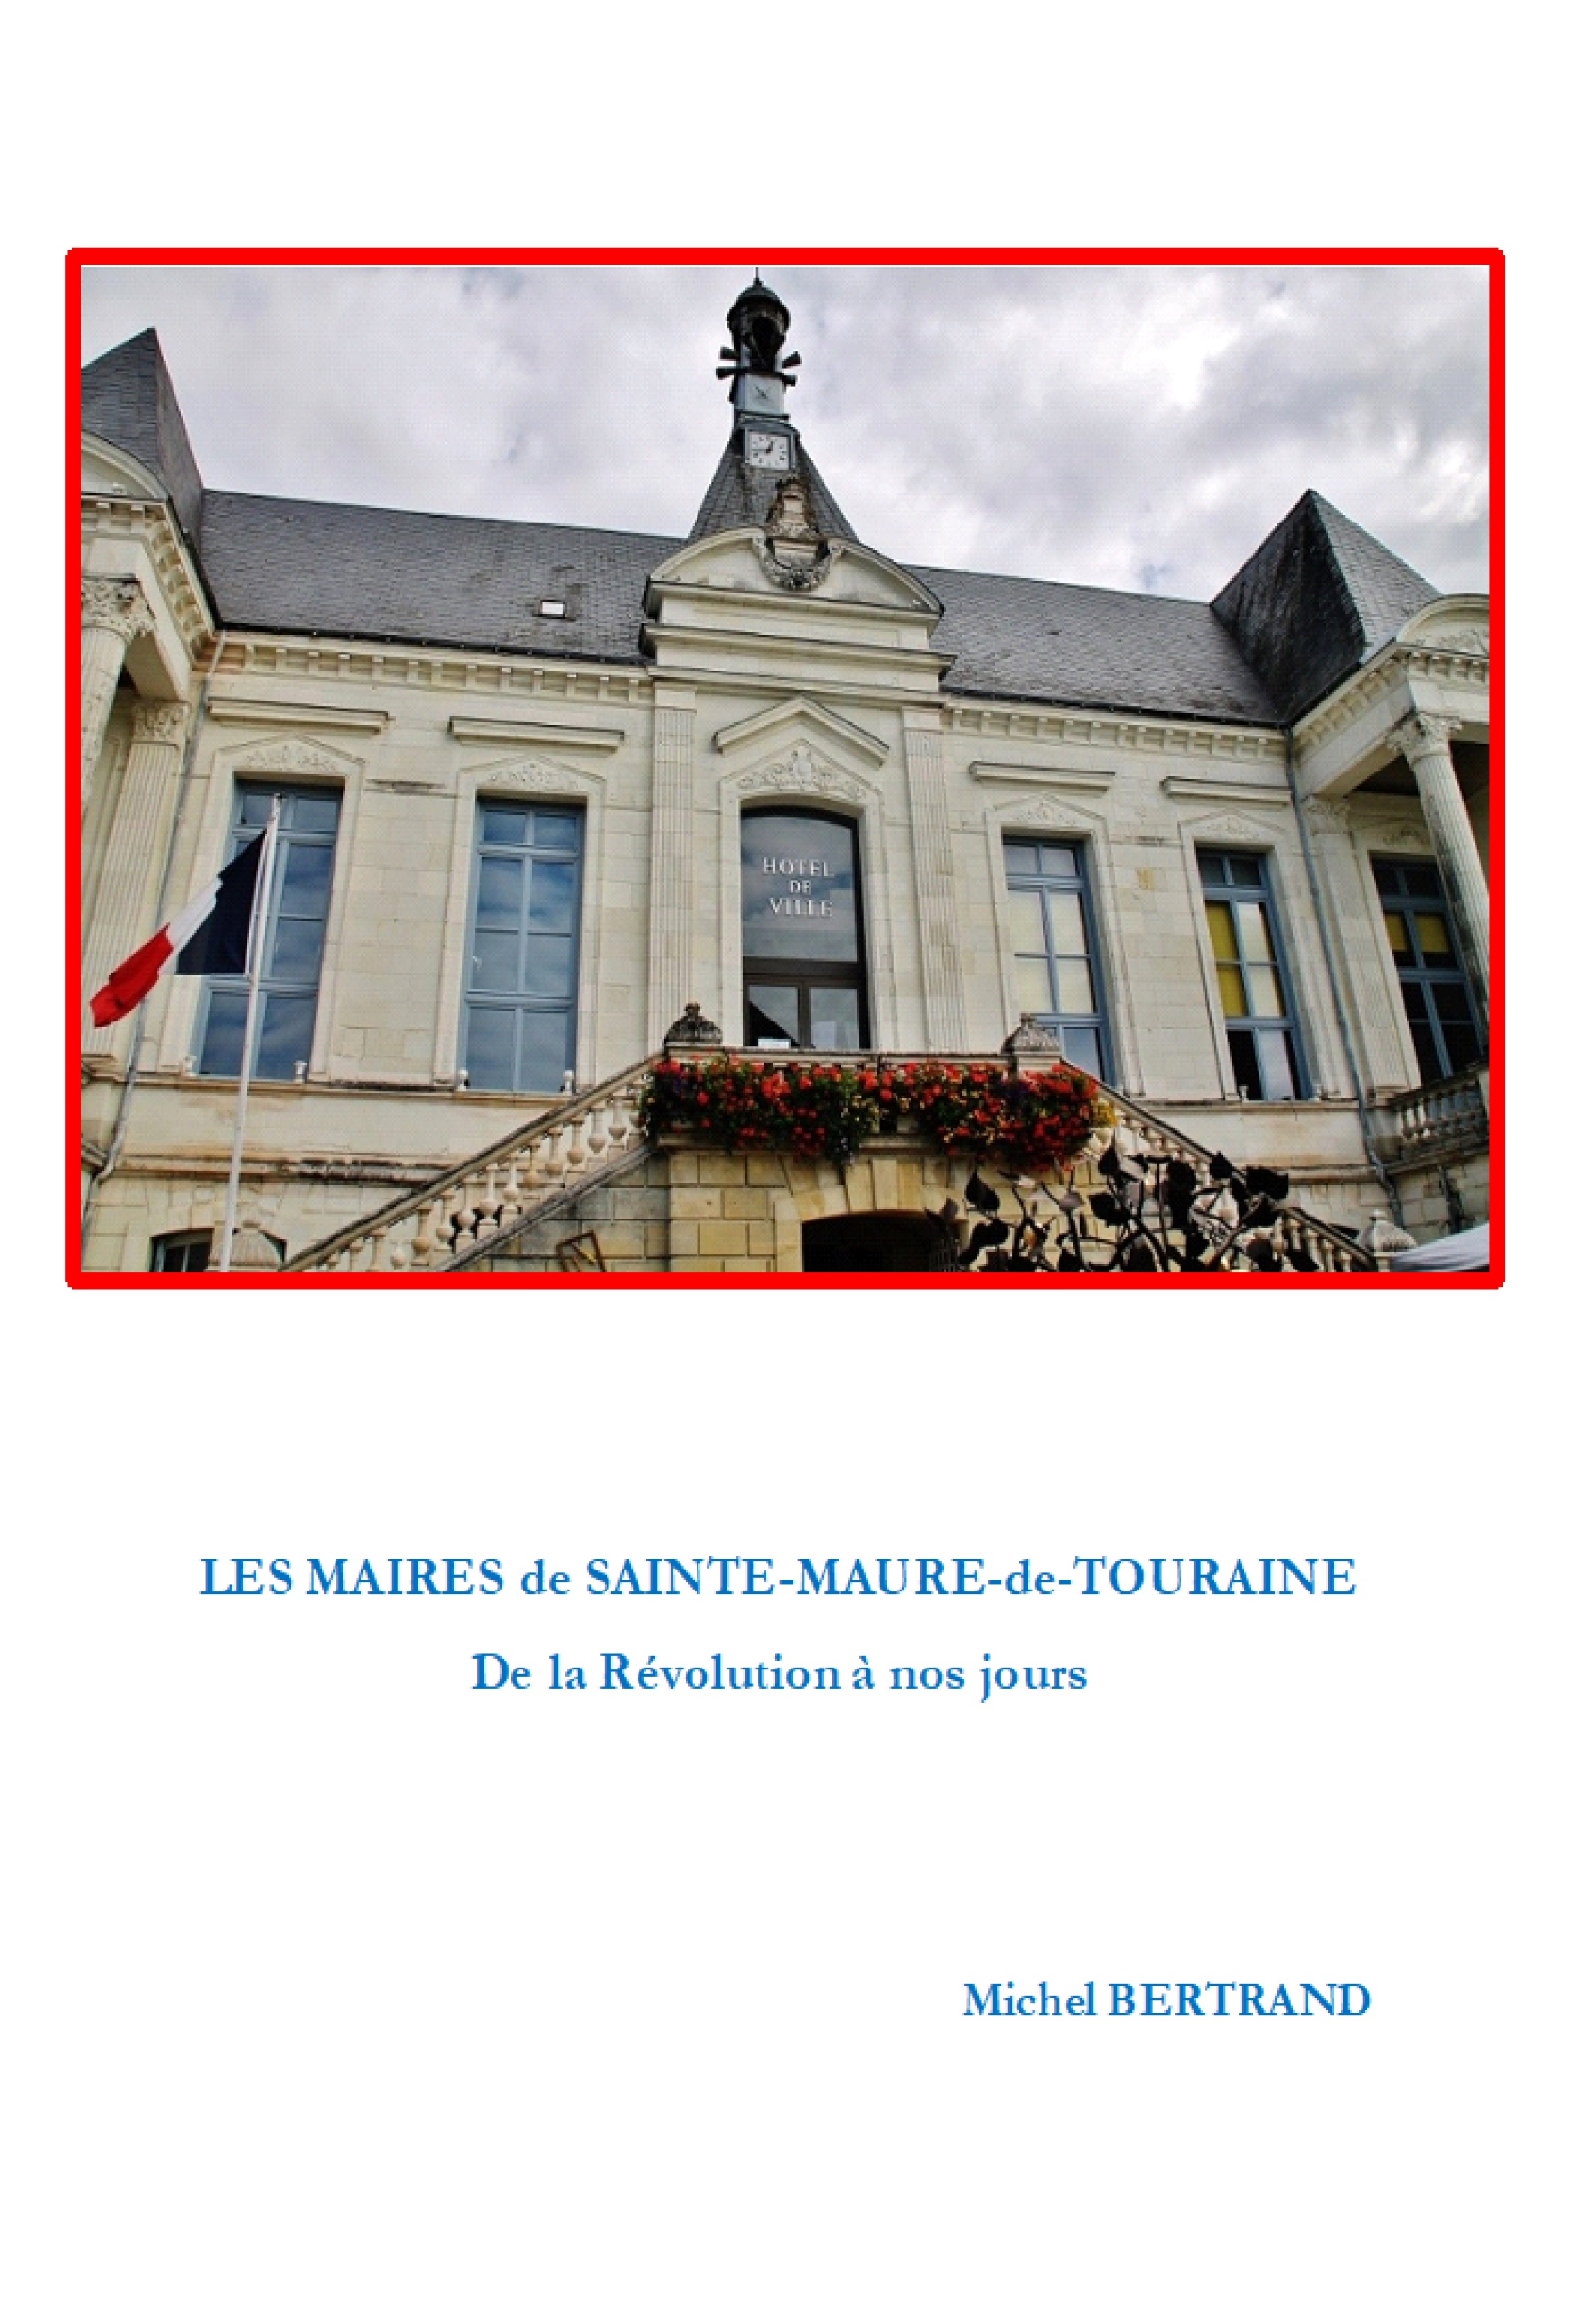 Les maires de Sainte Maure de Touraine